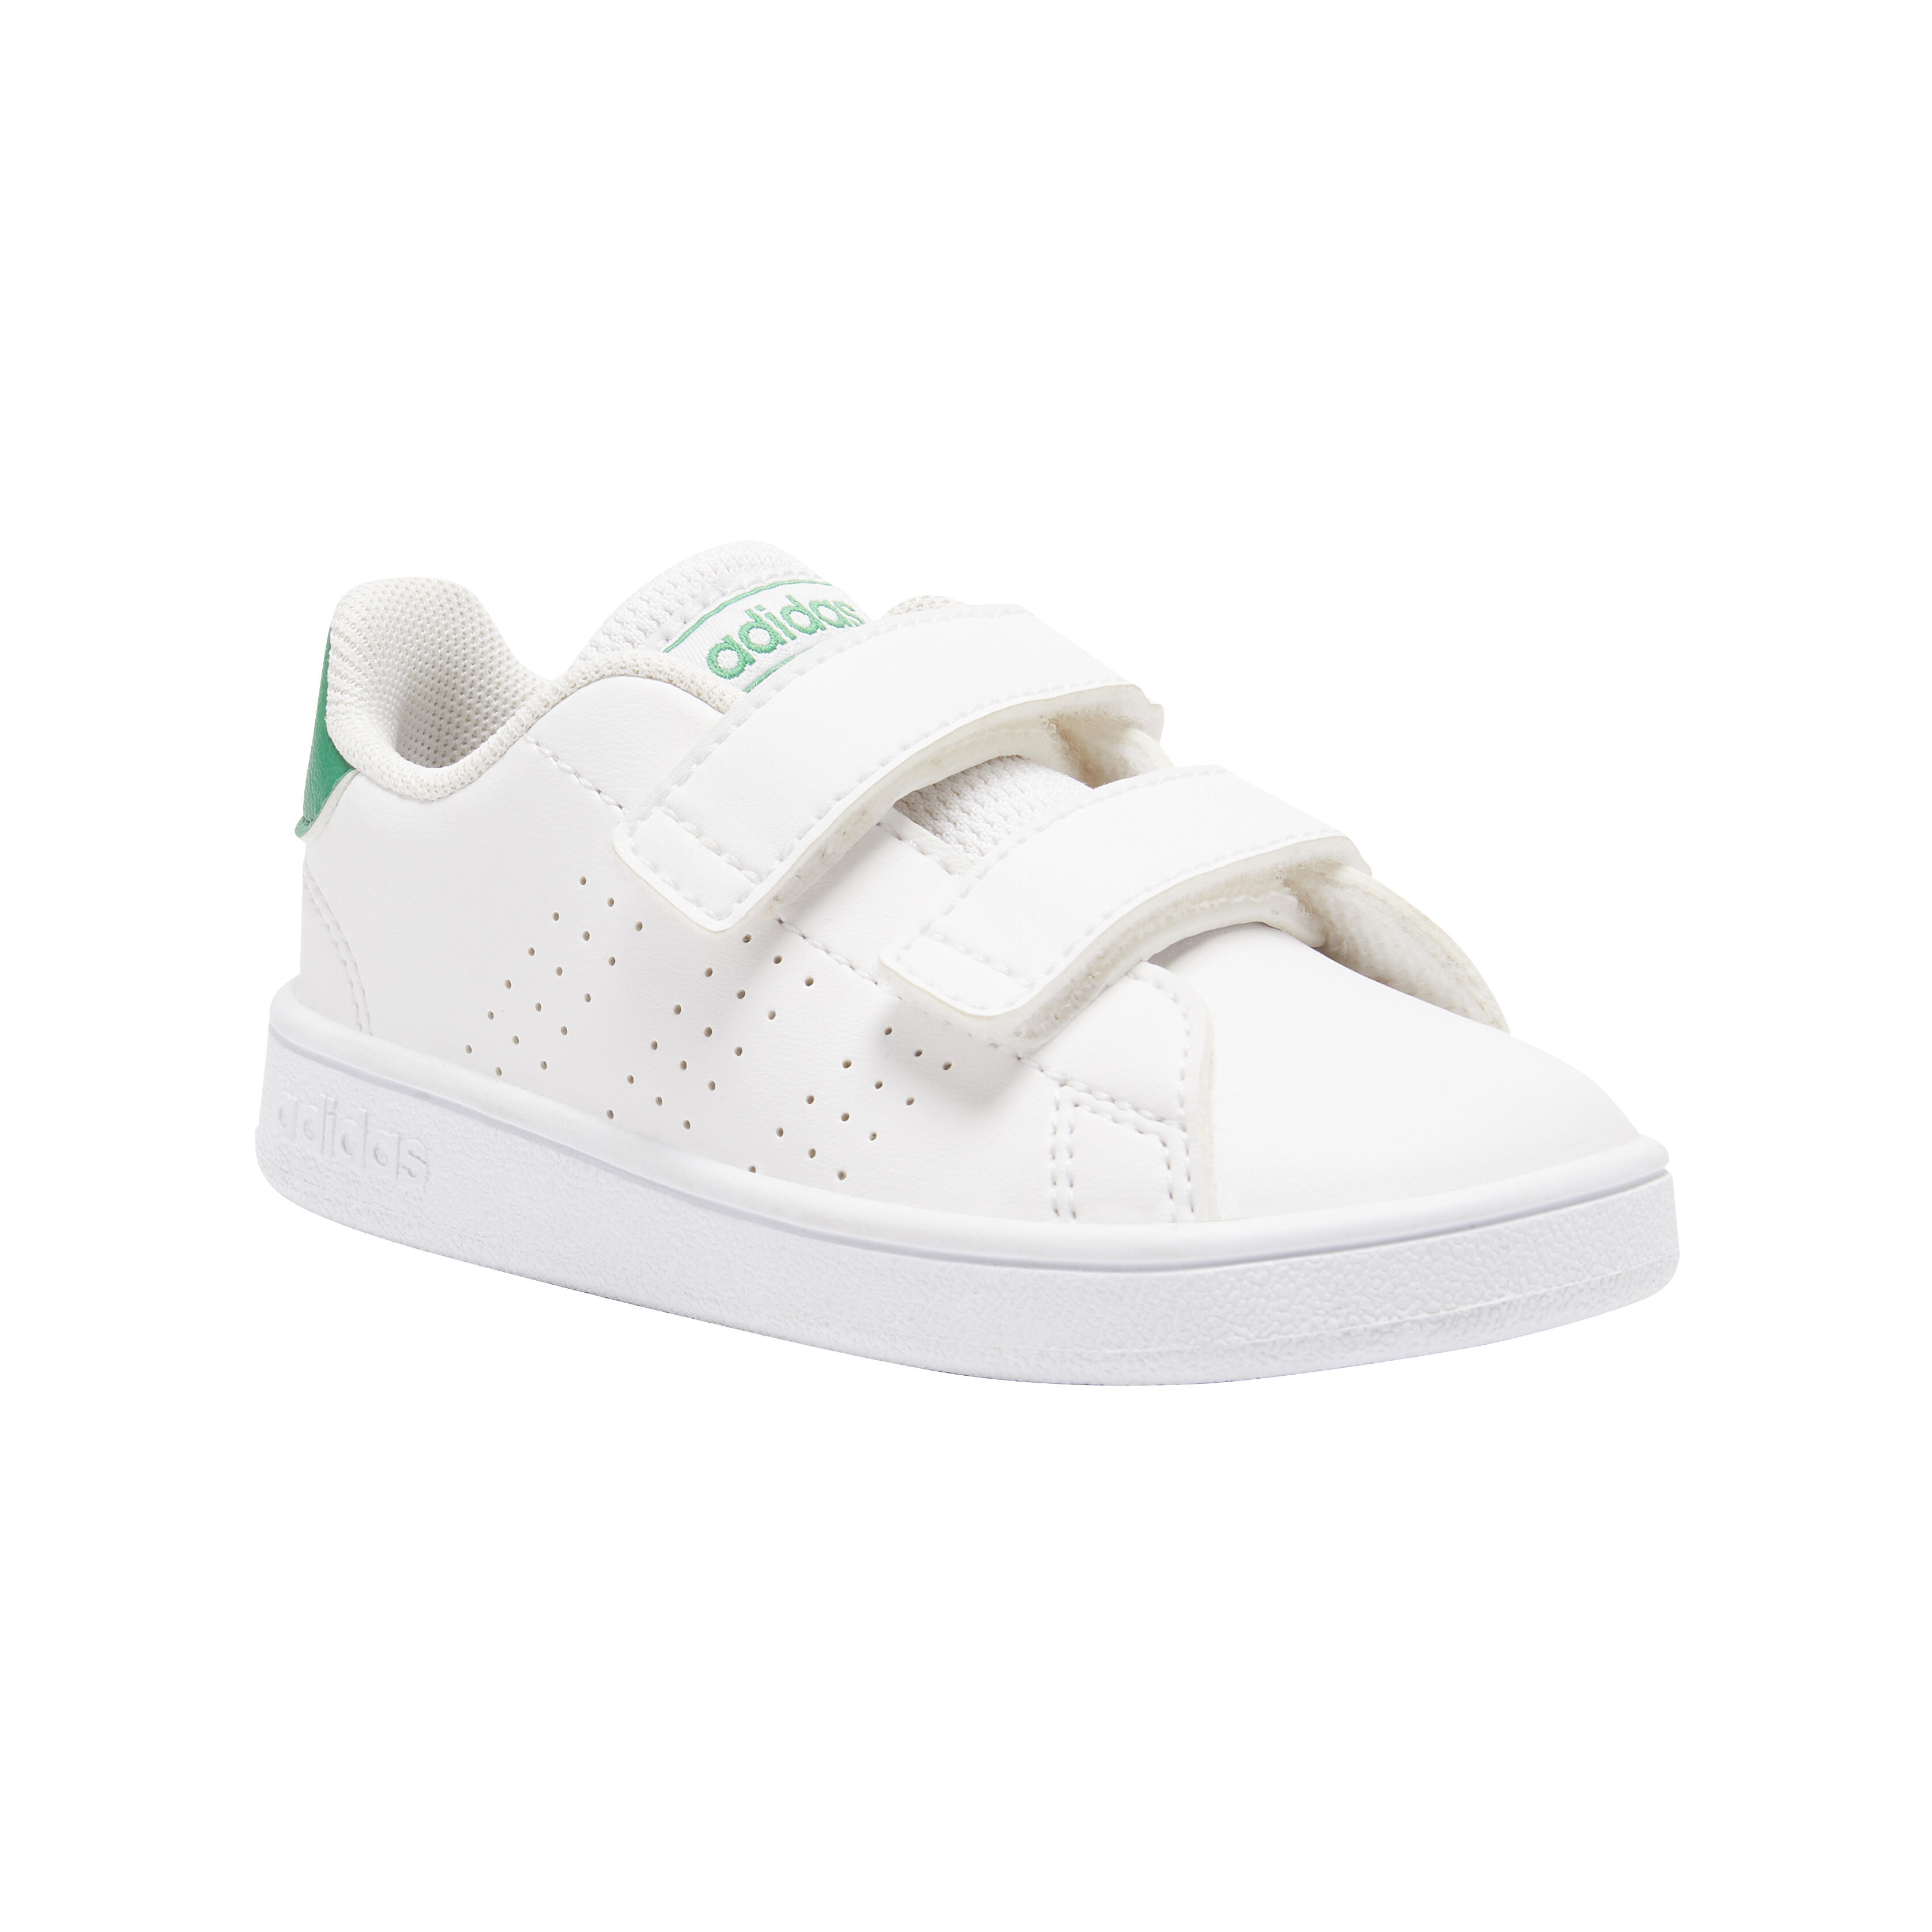 Încălțăminte ADVANTAGE alb verde copii baby gym ADIDAS adidas